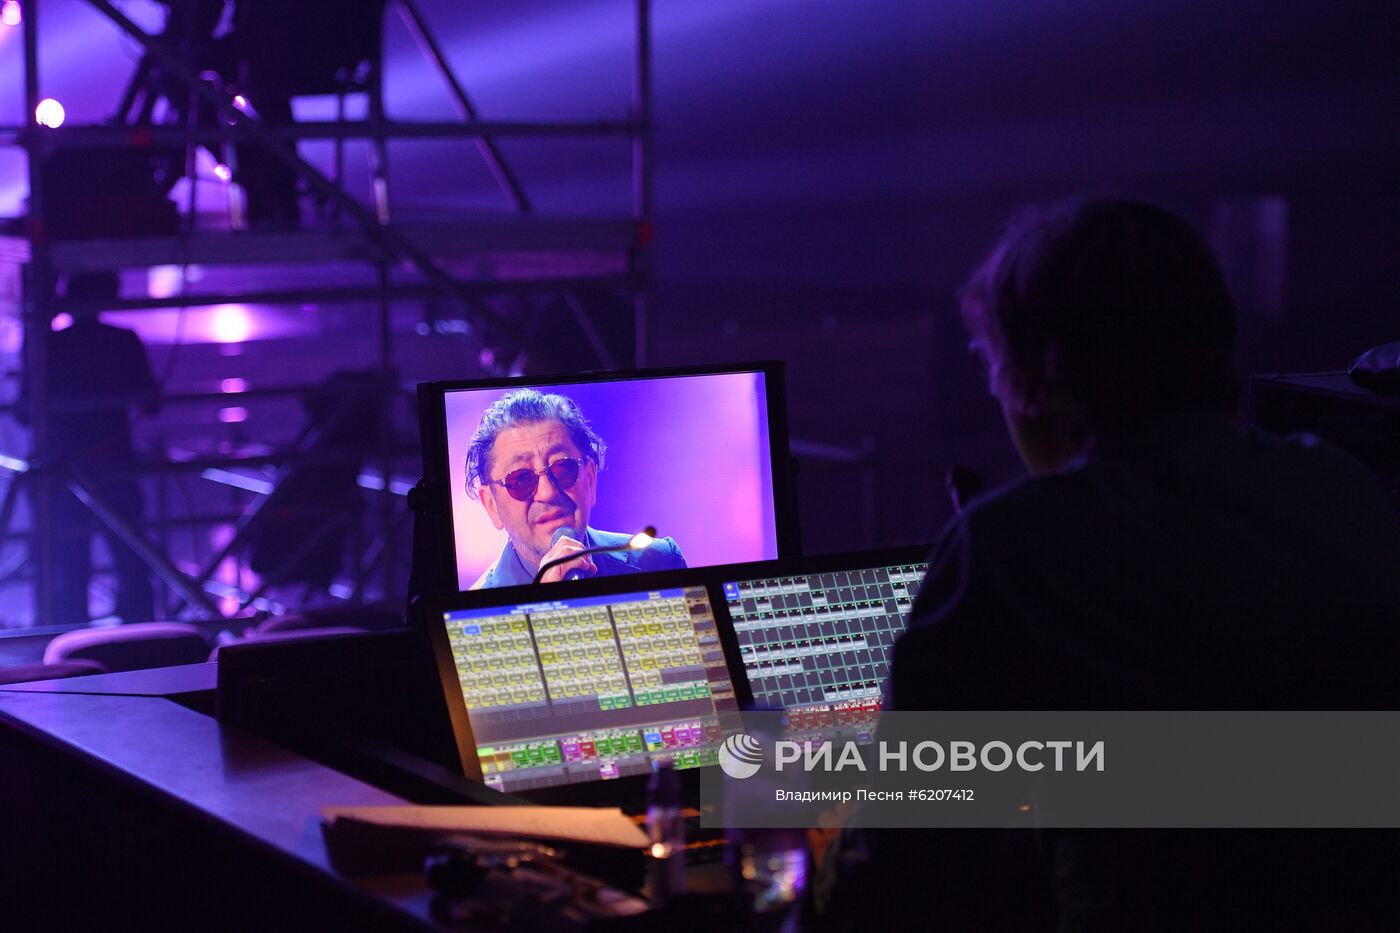 Онлайн-концерт "Русского радио" в Москве